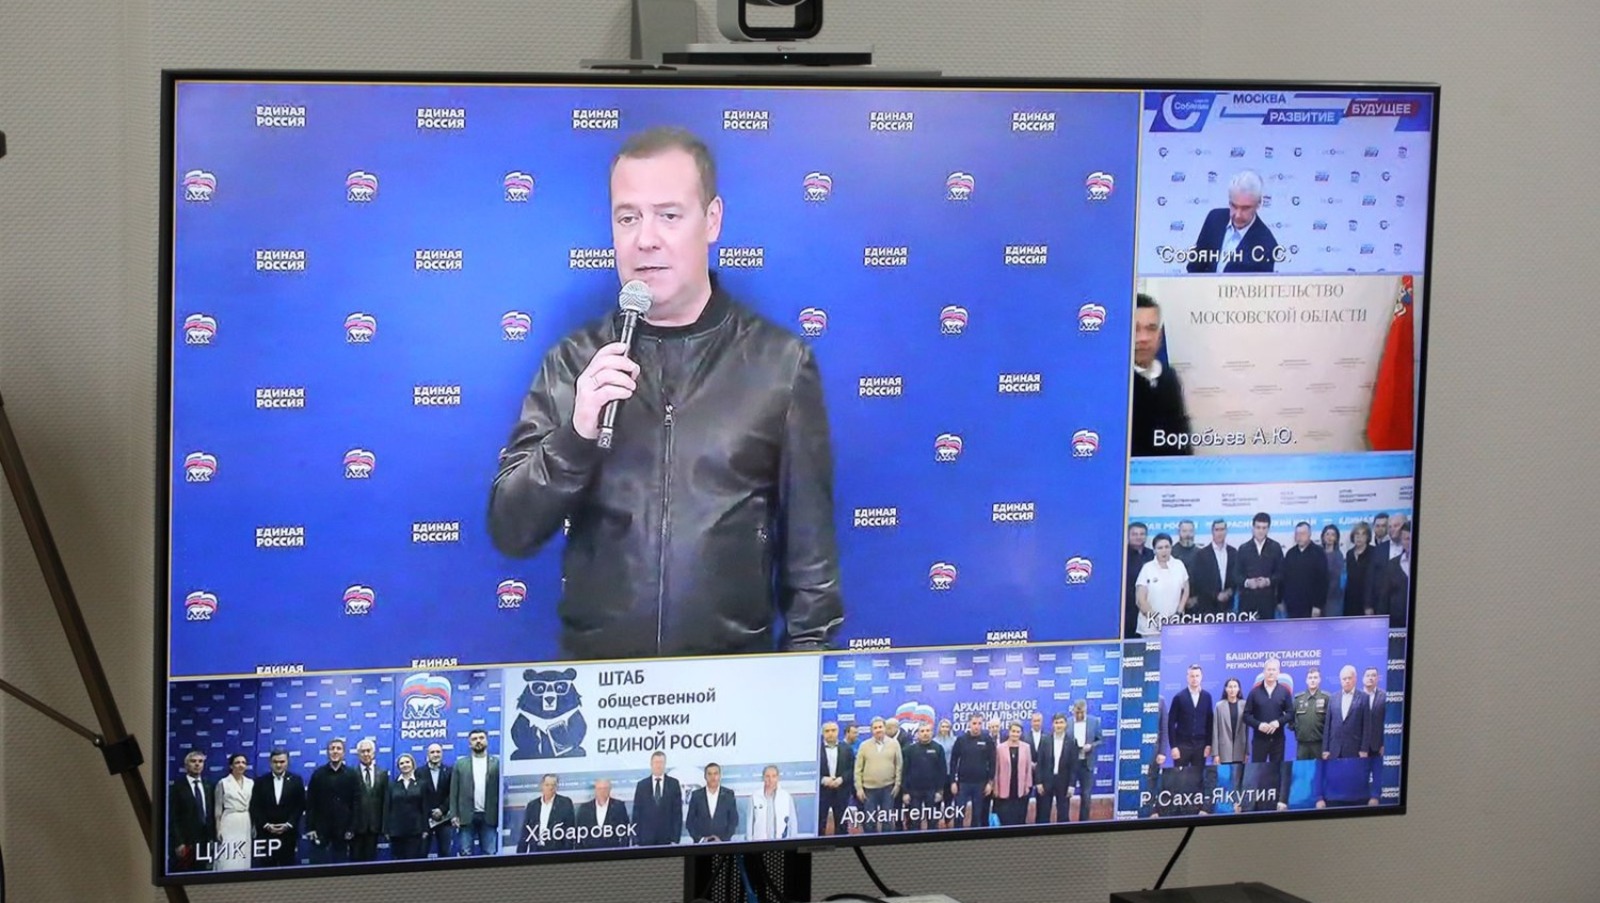 Дмитрий Медведев поздравил главу Башкортостана и его команду с достойным результатом на выборах